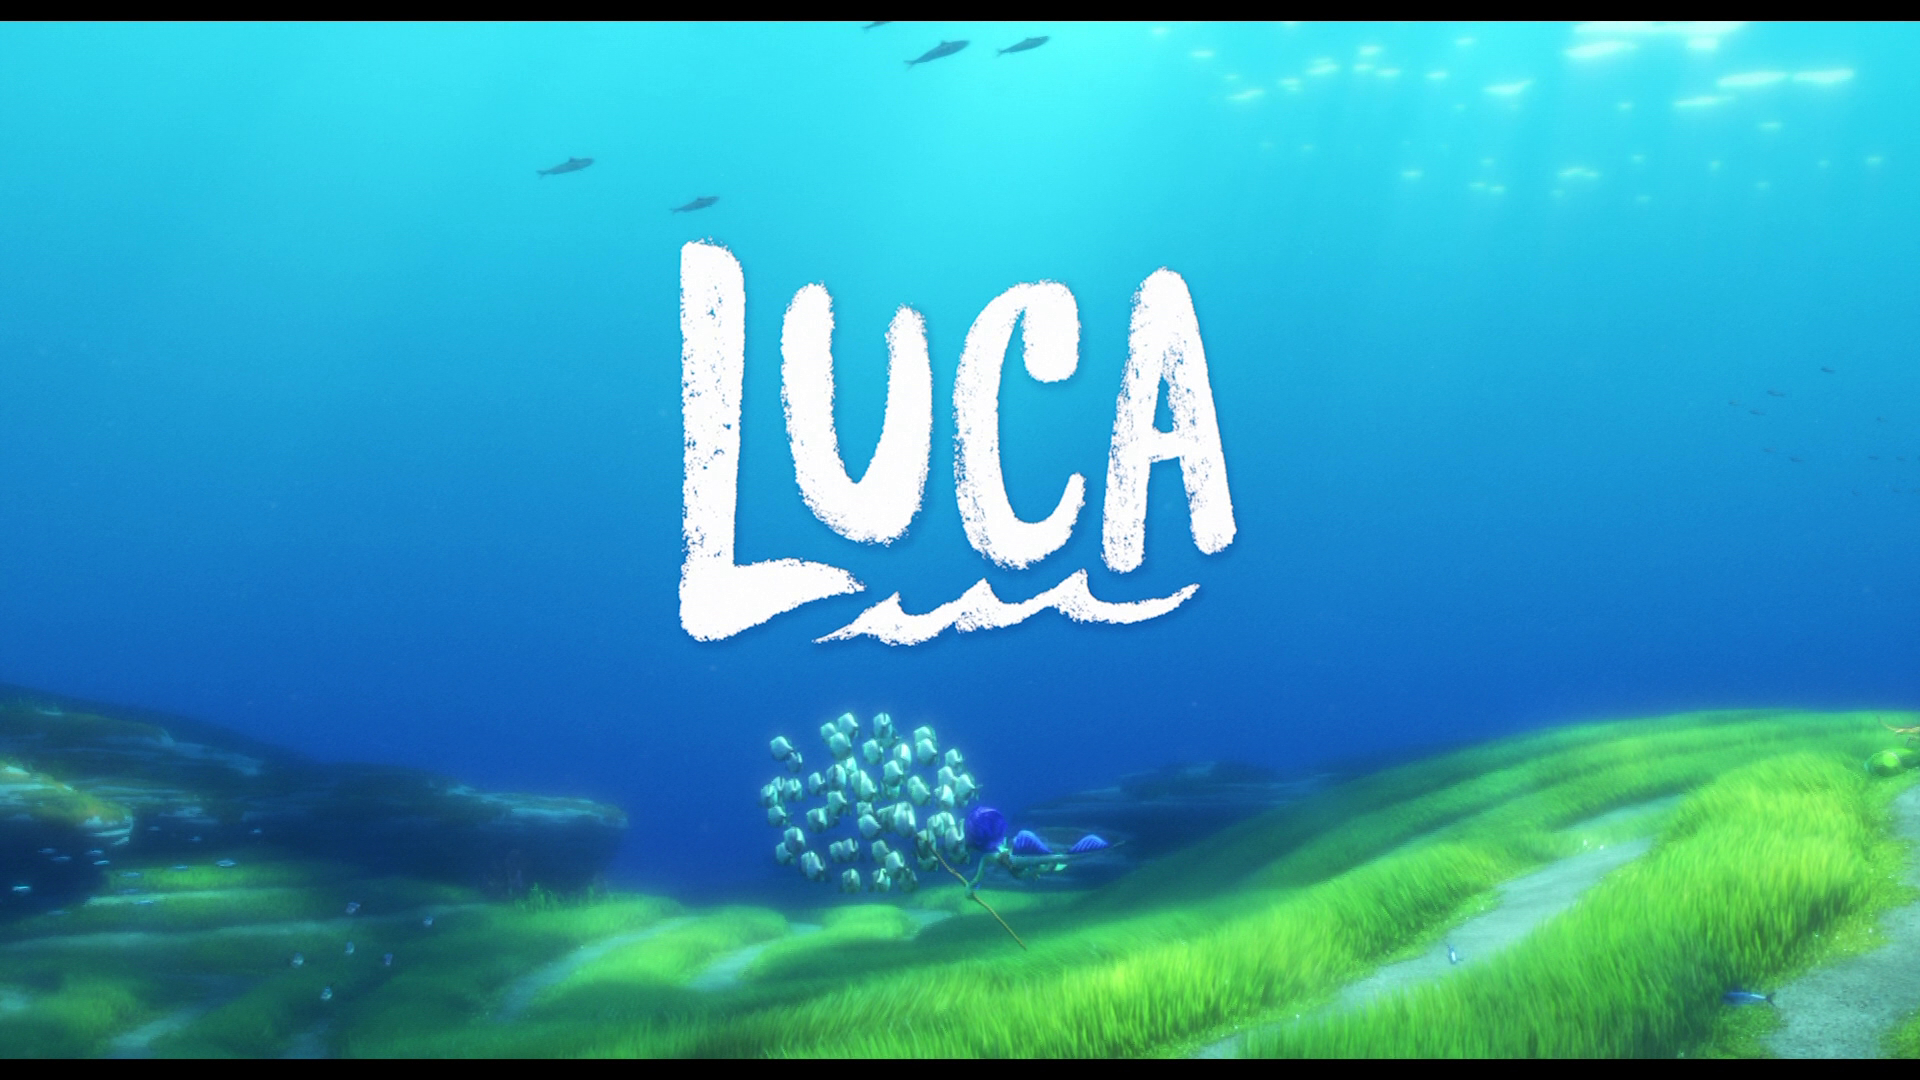 Movie Luca 4k Ultra HD Wallpaper